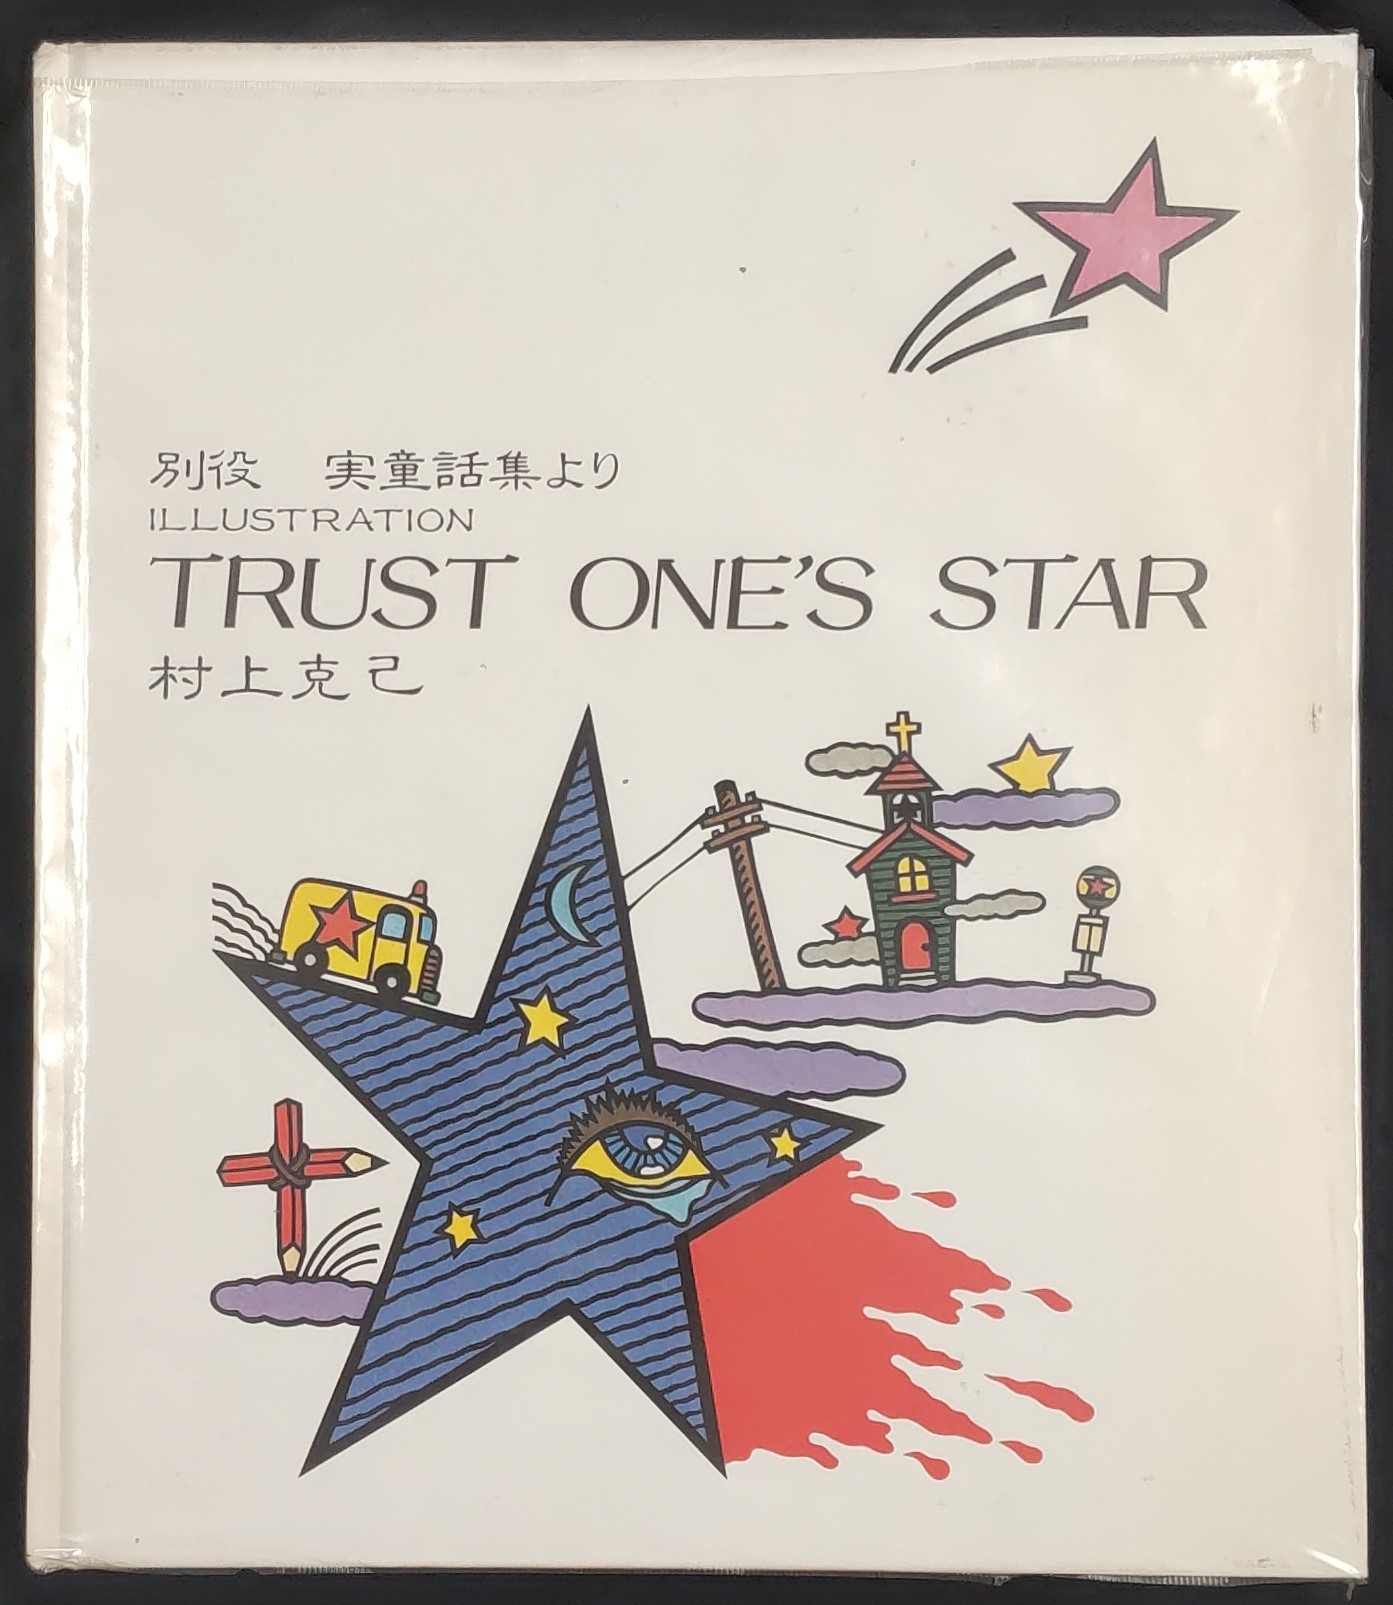 別役  実童話集より  イラストレーション  「TRUST ONE'S STAR」